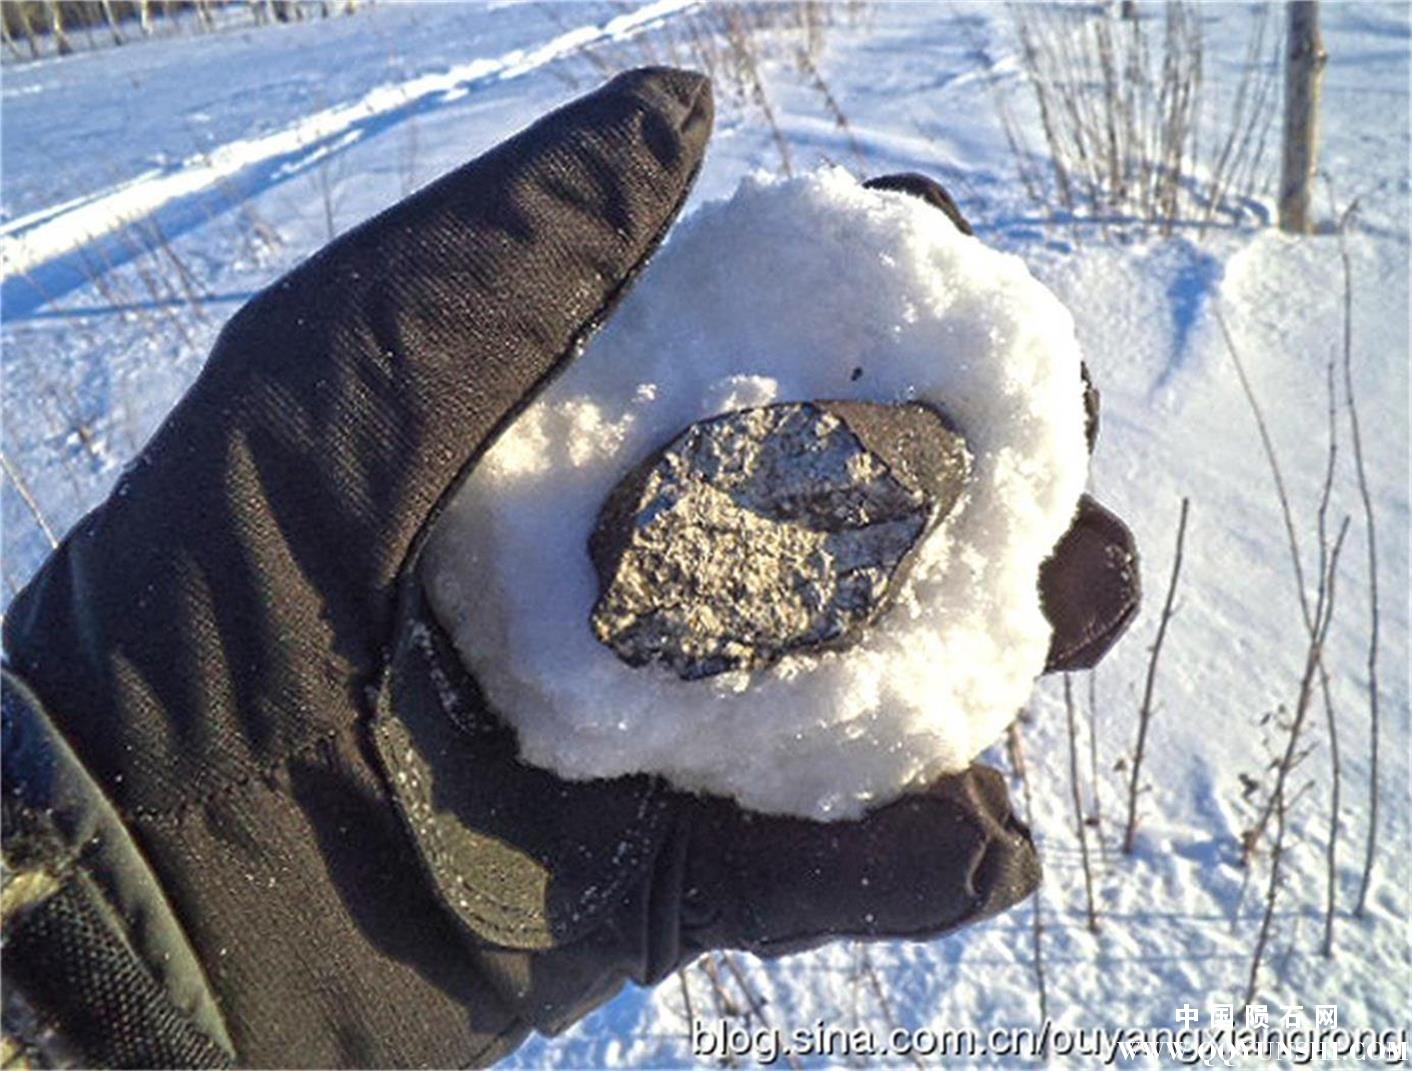 一枚106.2克车里雅宾斯克陨石碎片猎获现场图片